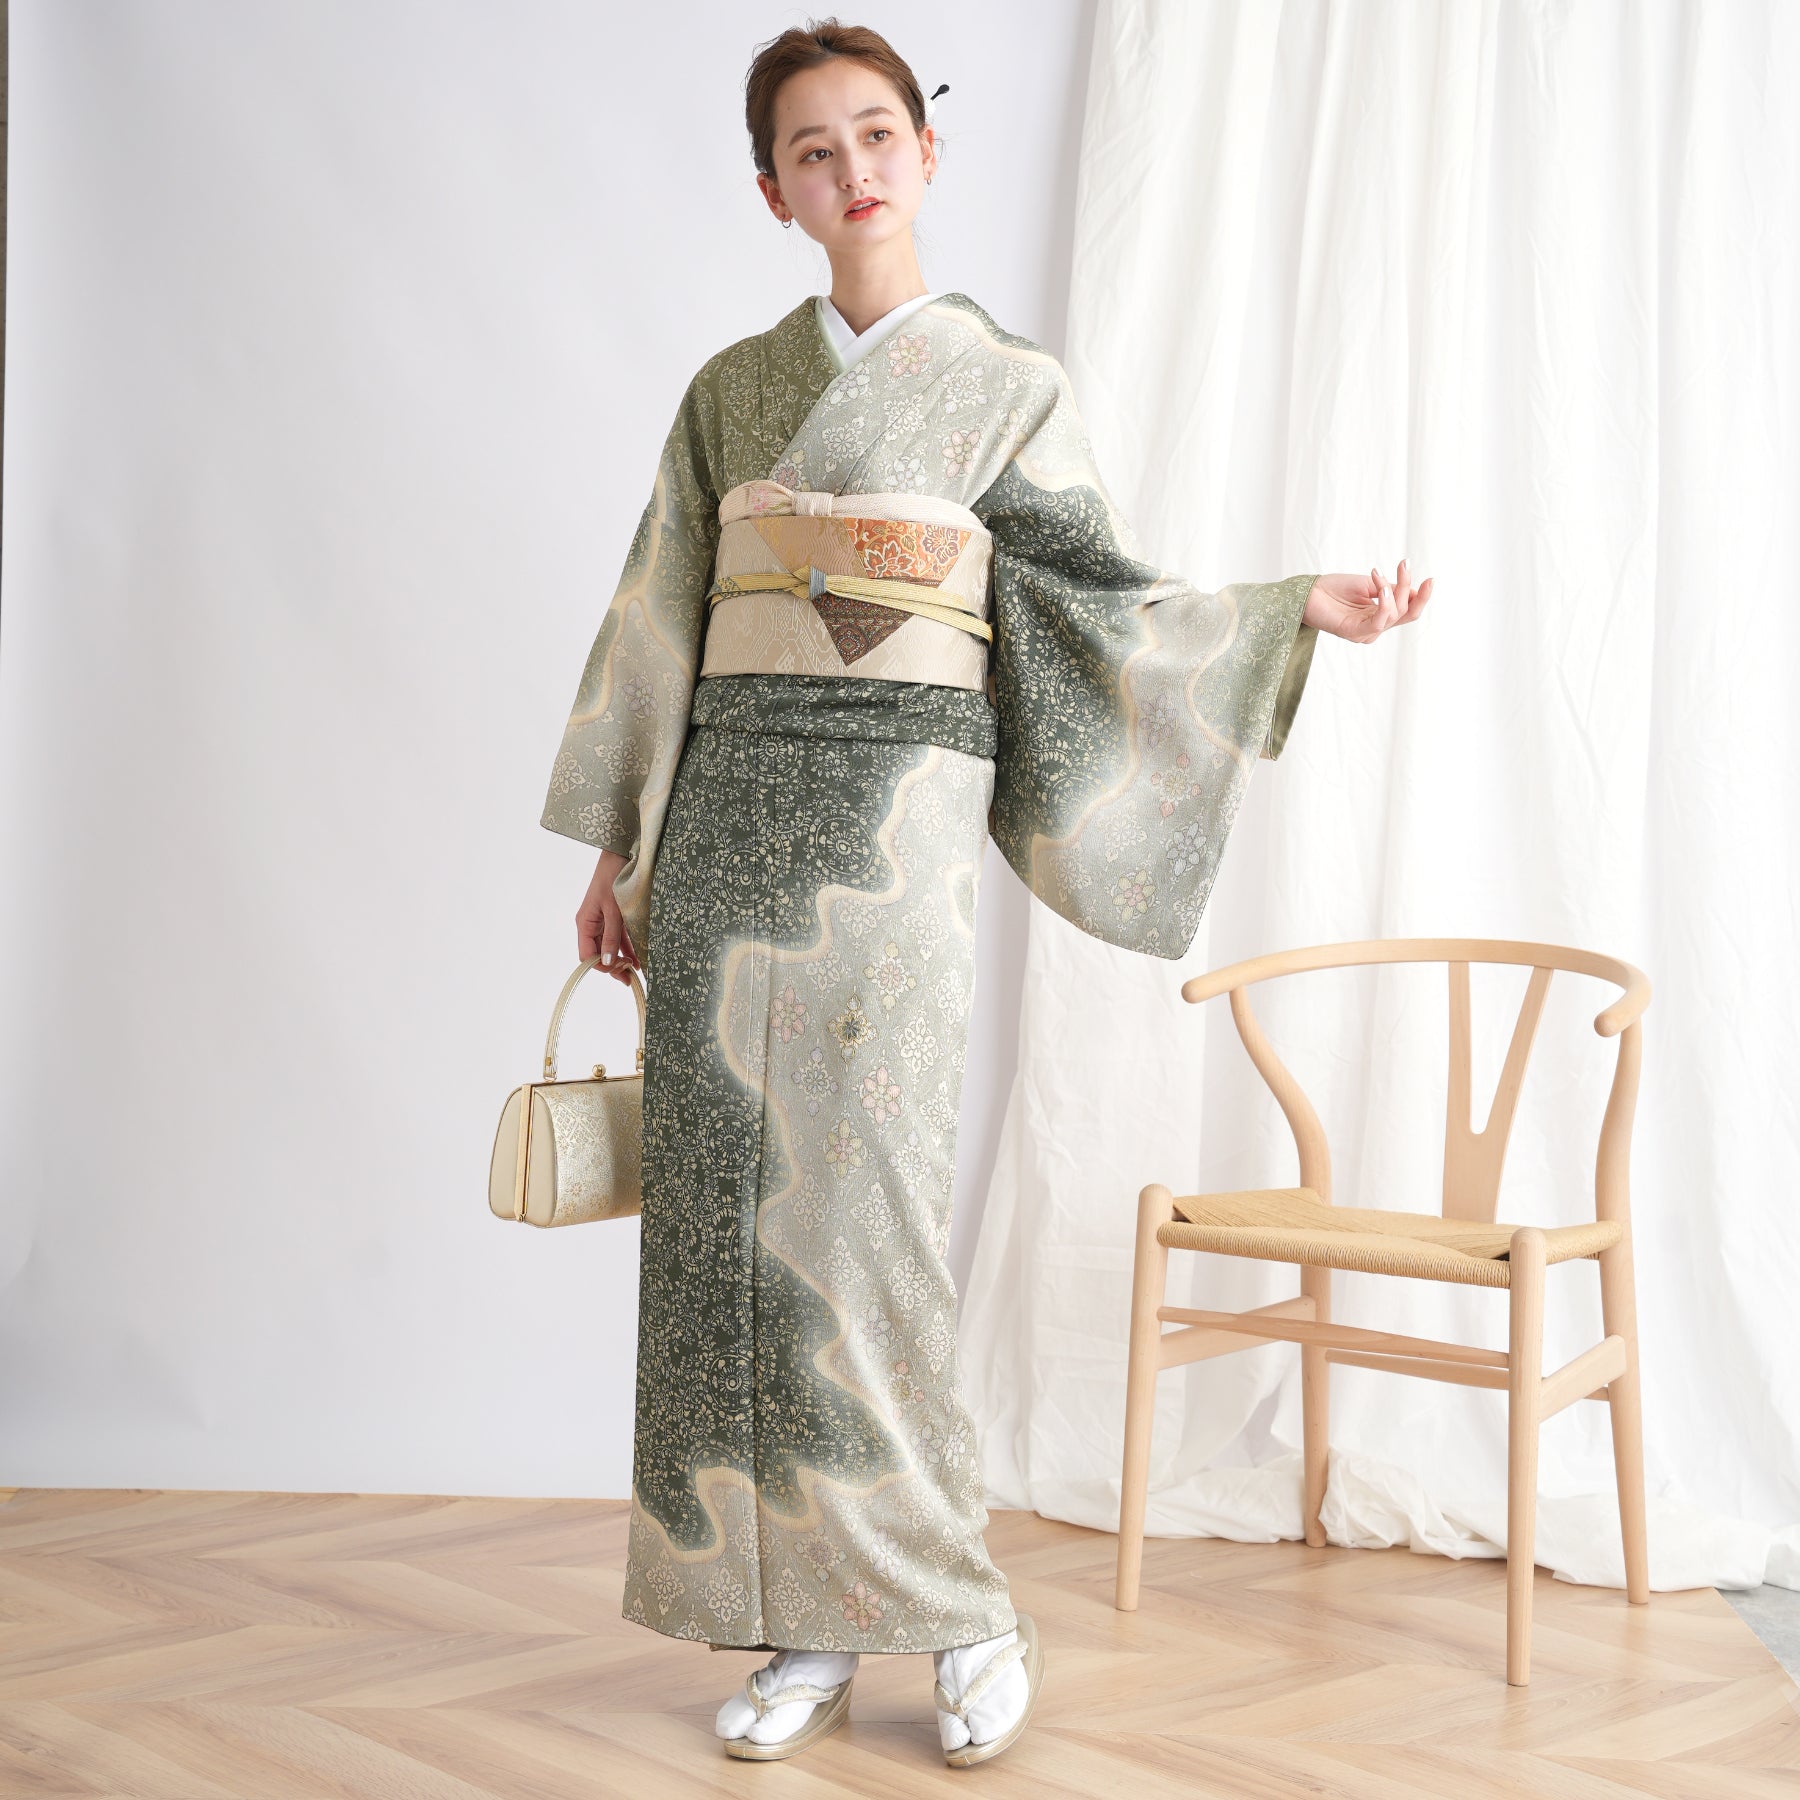 新品 日本製 フォーマル 草履 ぞうり 和装 着物 訪問着 袋帯 結婚式レディース